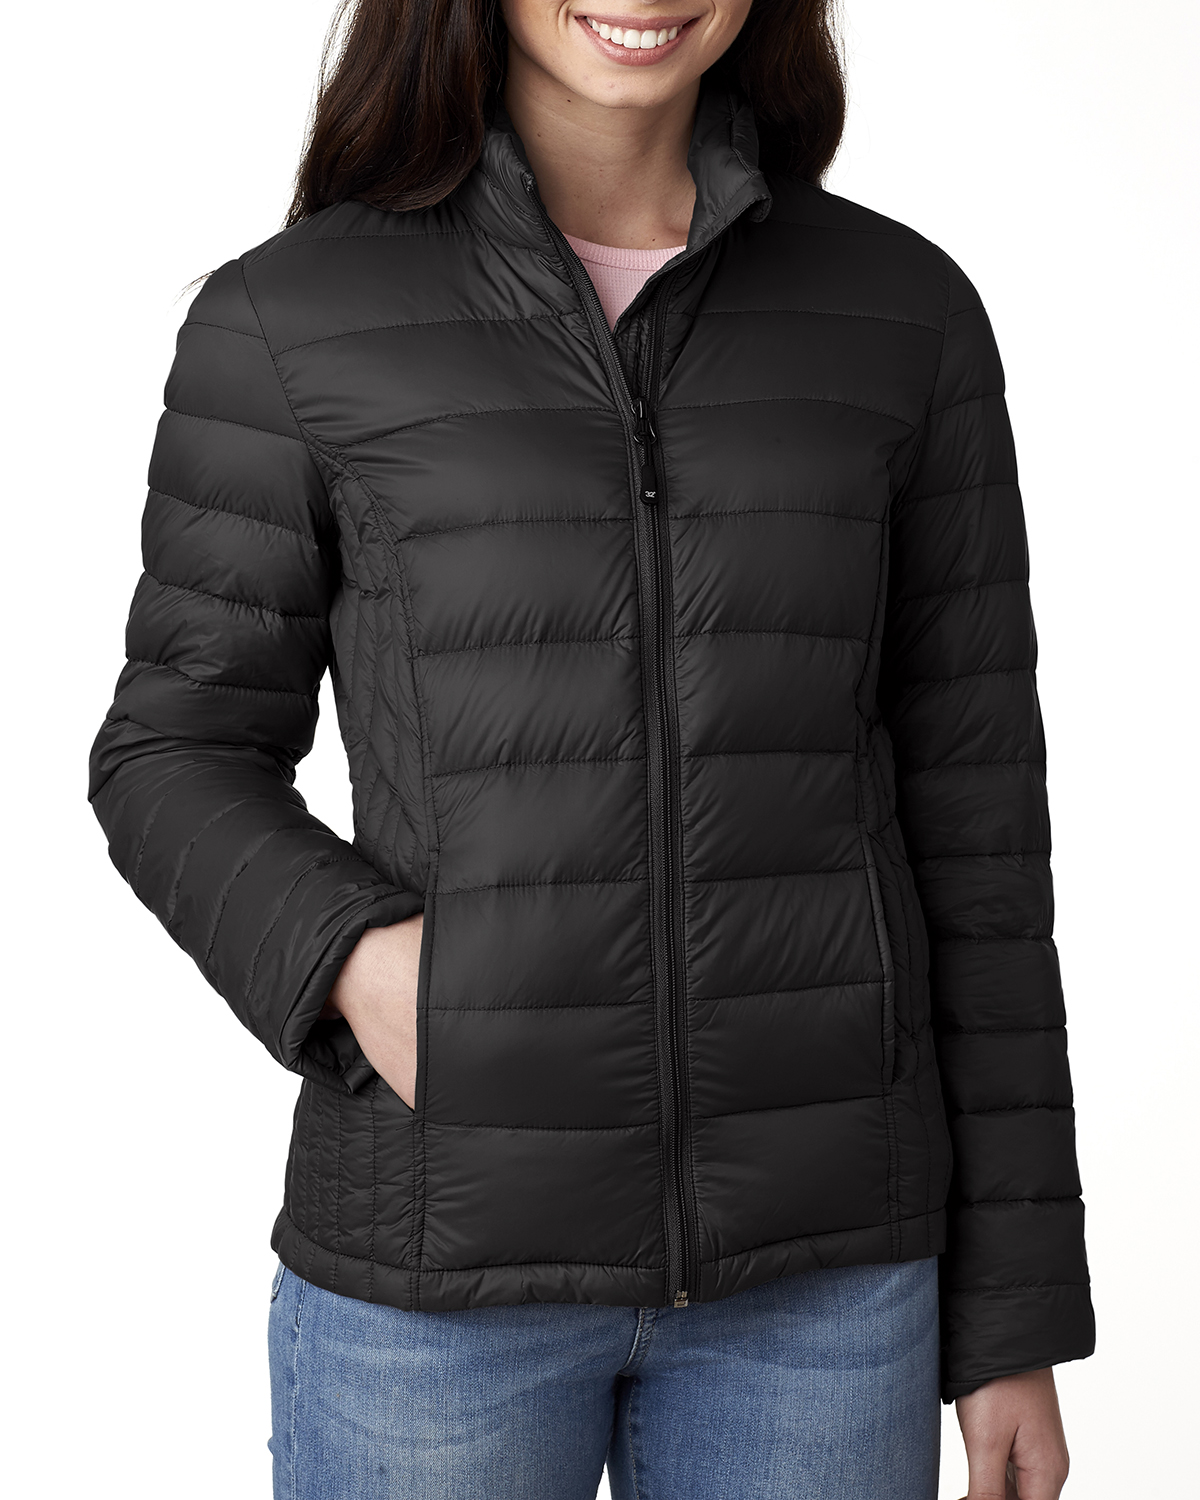 Weatherproof 15600W - Ladies' Packable Down Jacket $69.58 - Outerwear